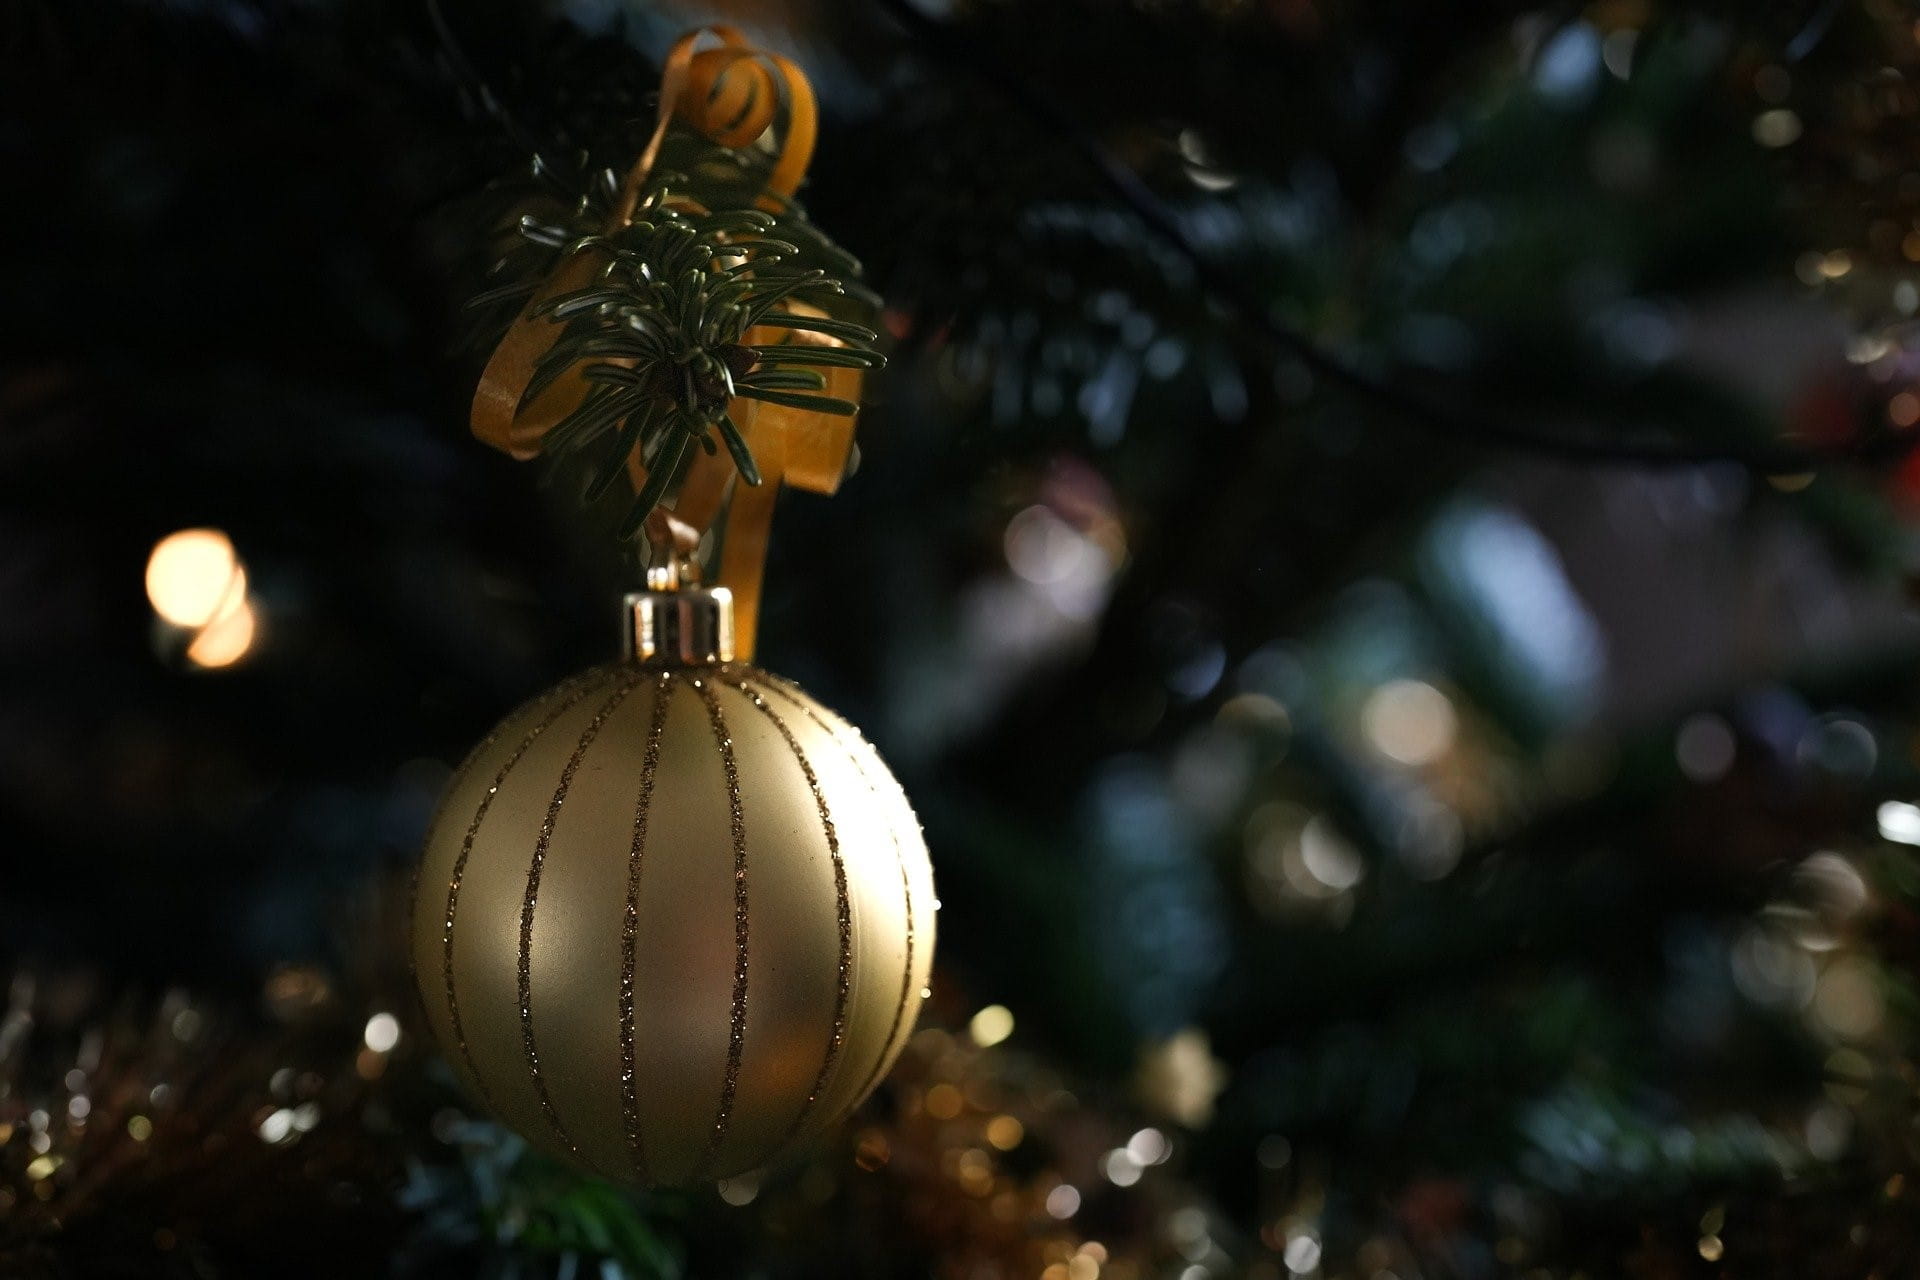 Eine goldene Weihnachtskugel mit Schleife und Tannenzweig verziert hängt am Baum.